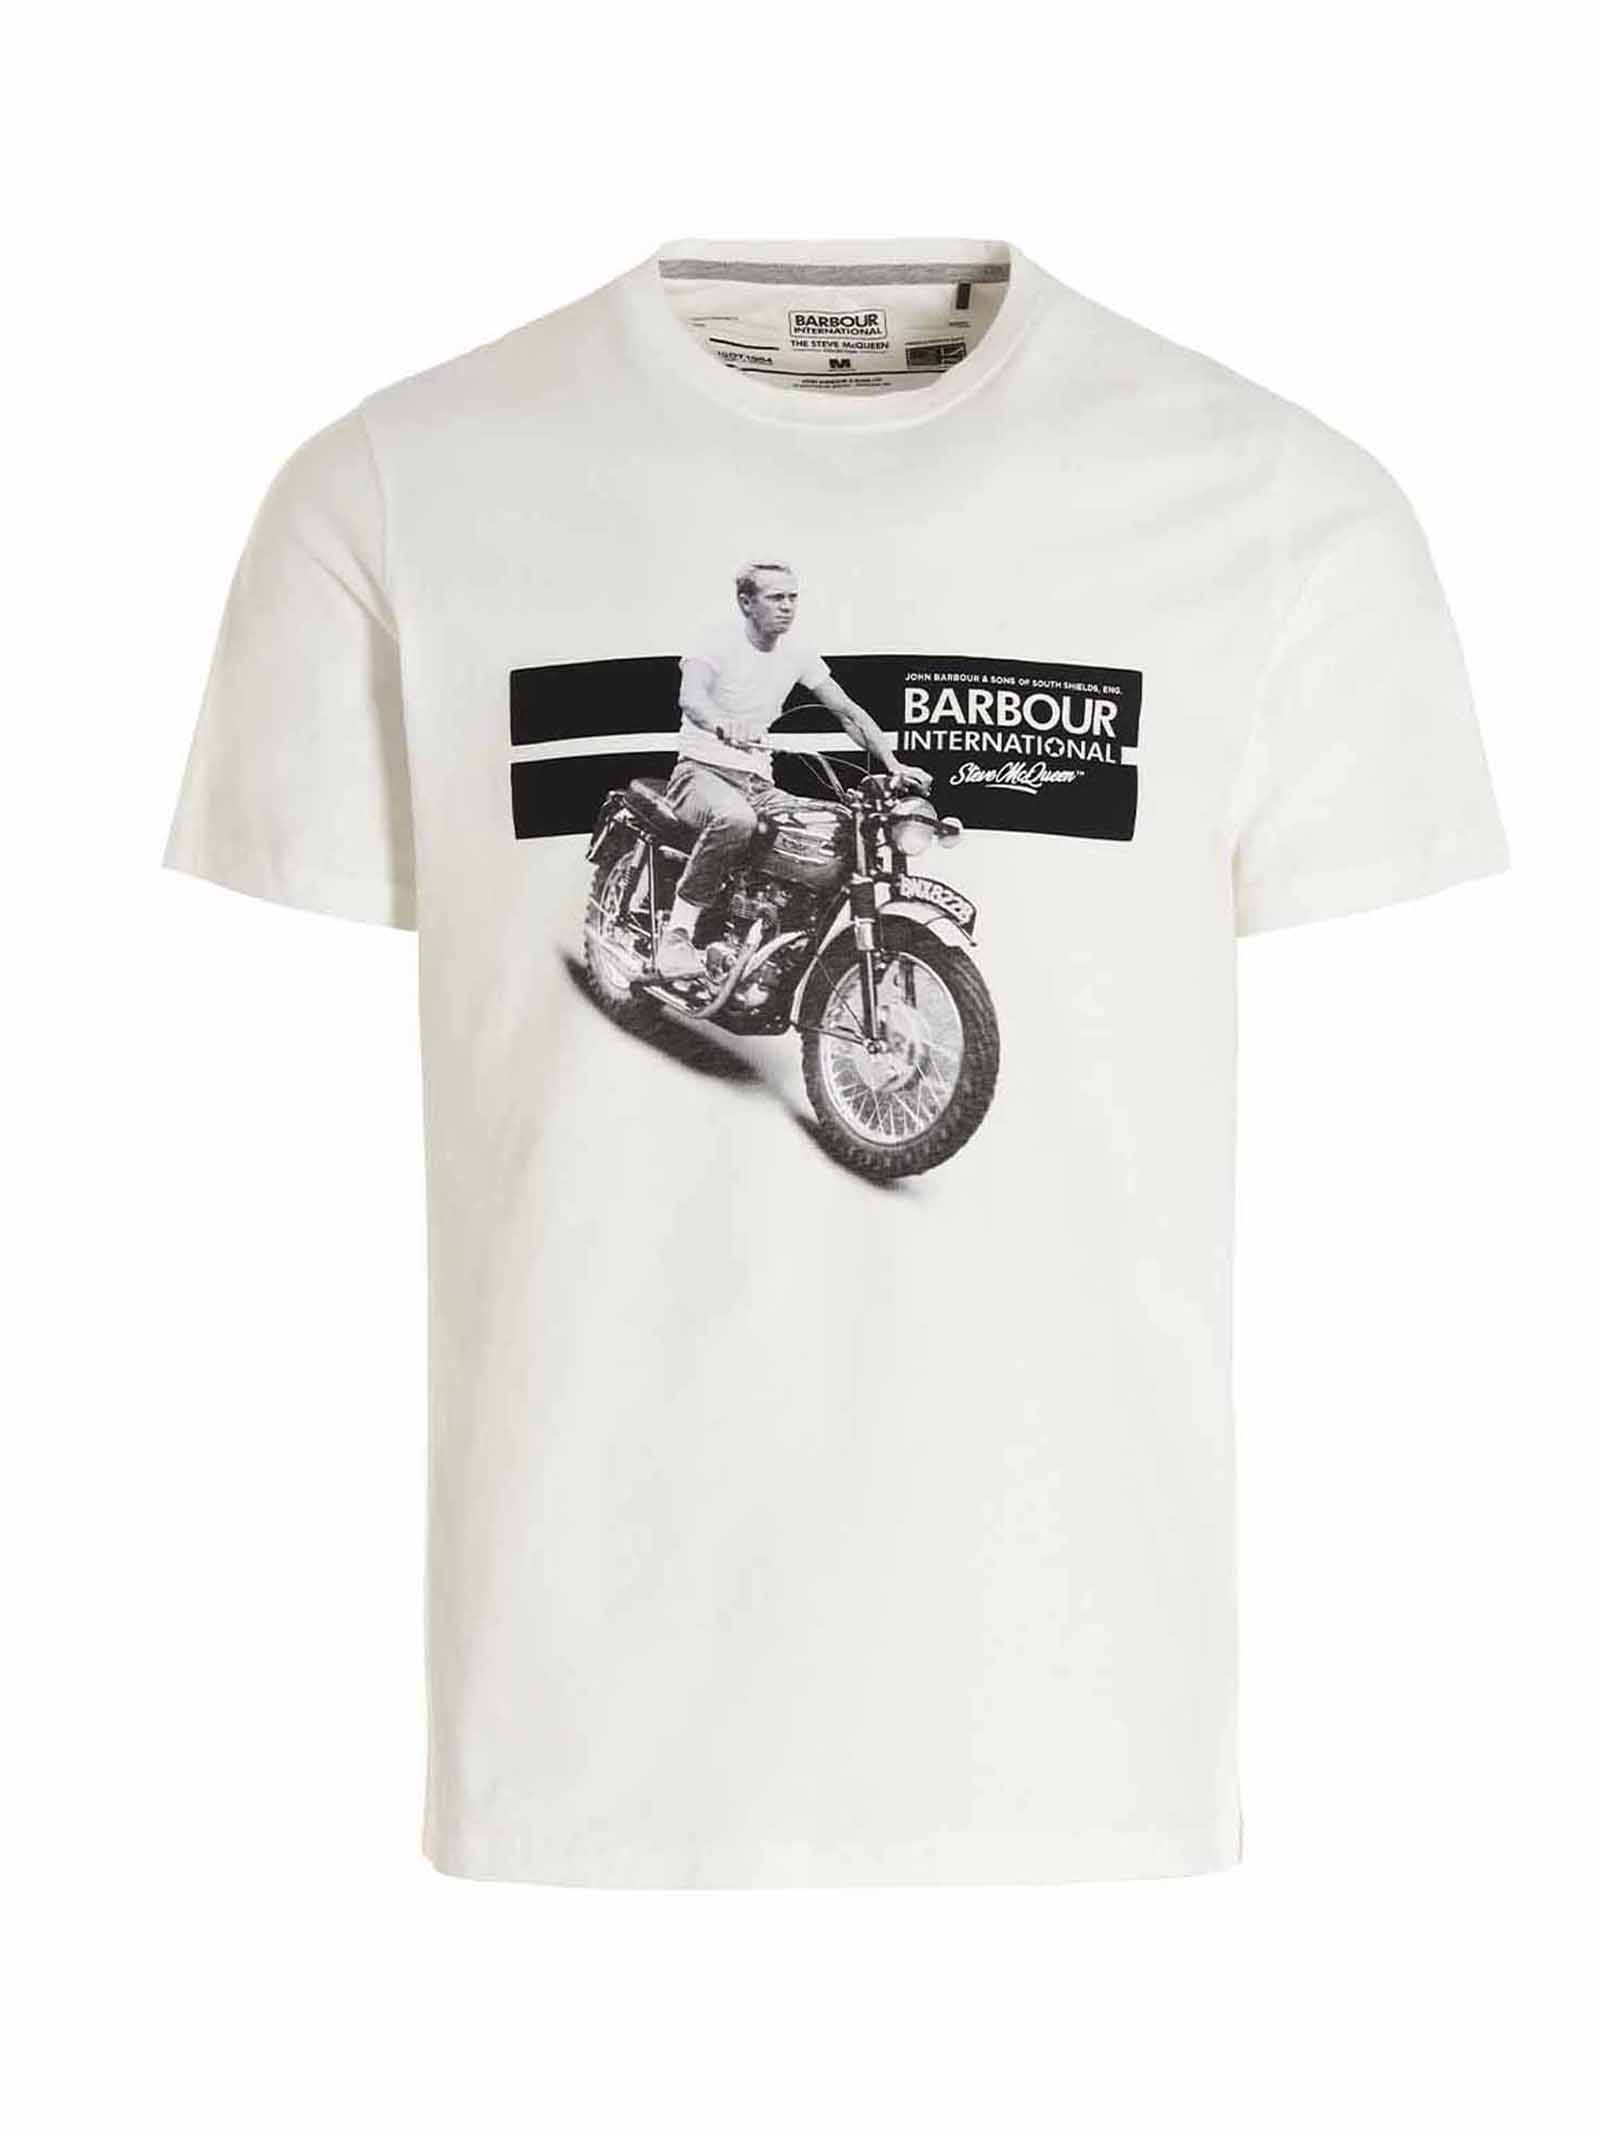 Barbour international X Steve Mcqueen T-shirt